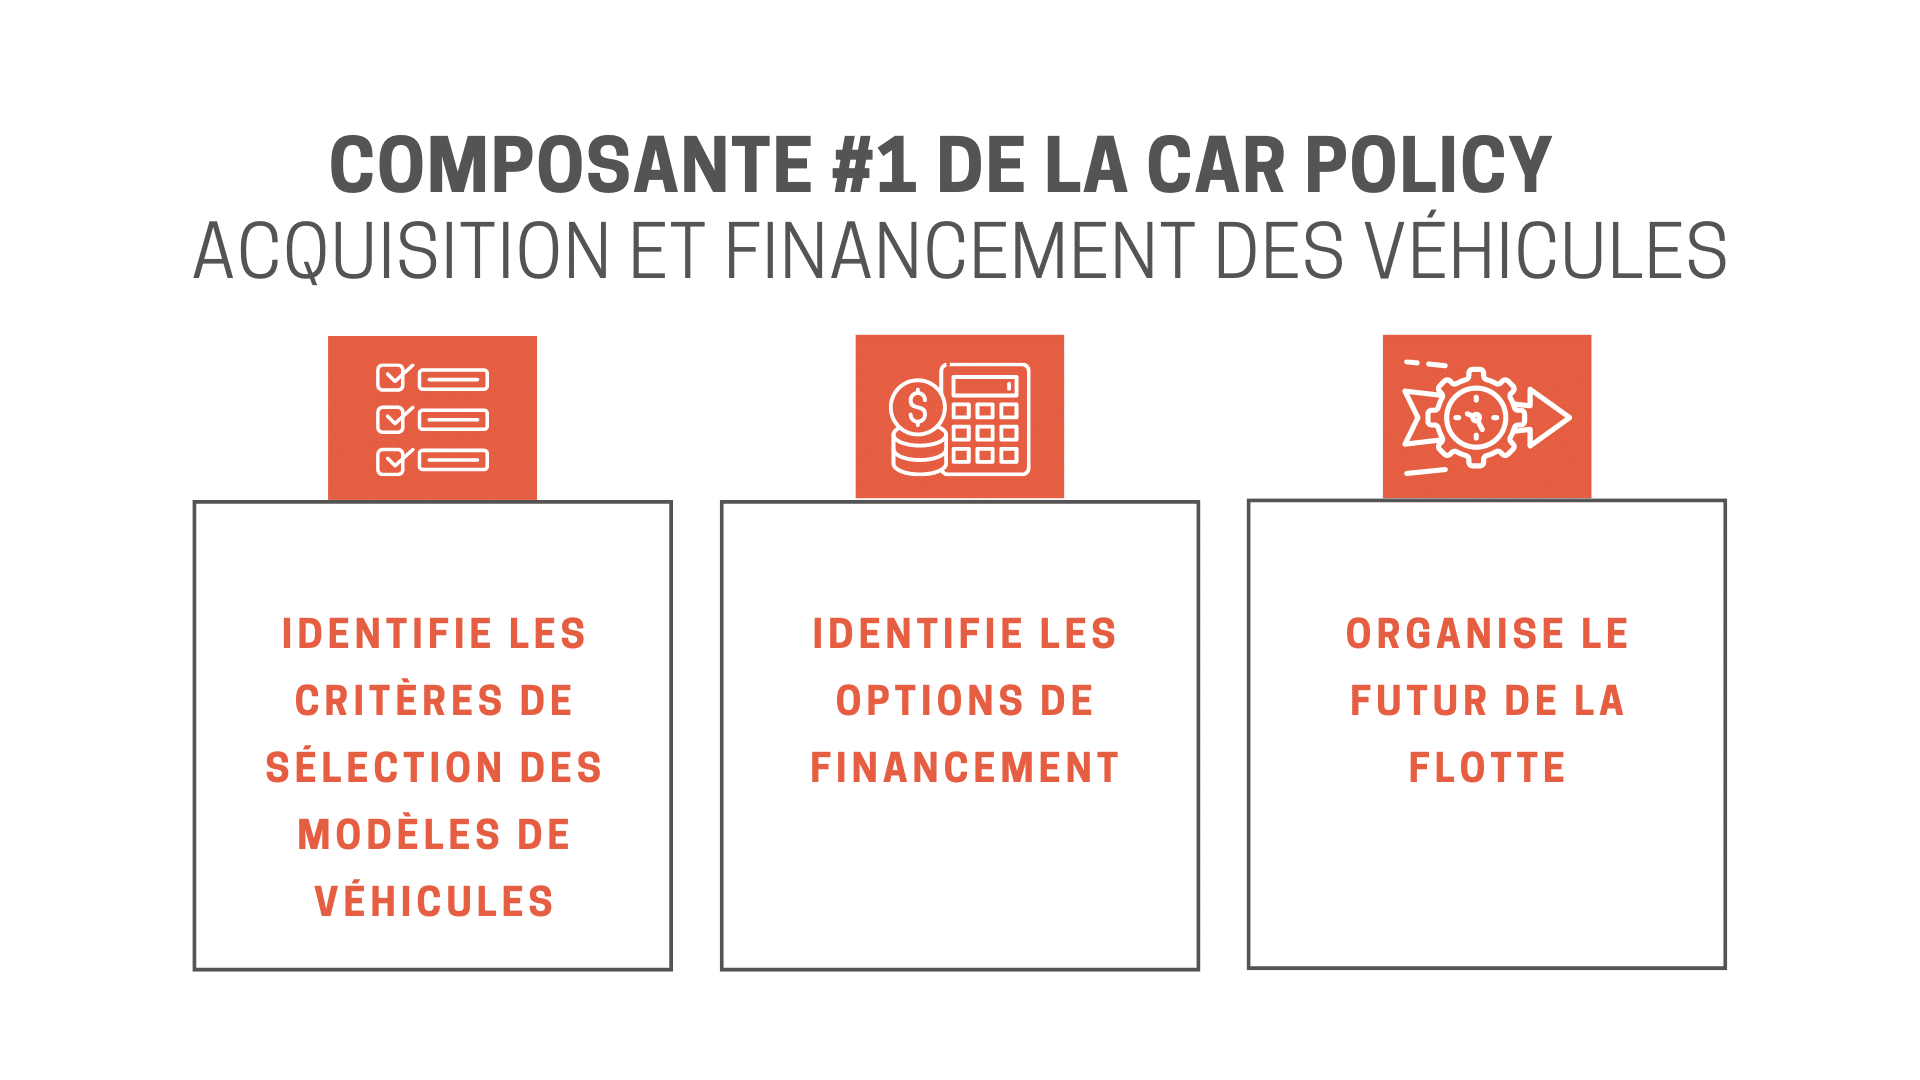 Acquisition et financement des véhicules car policy